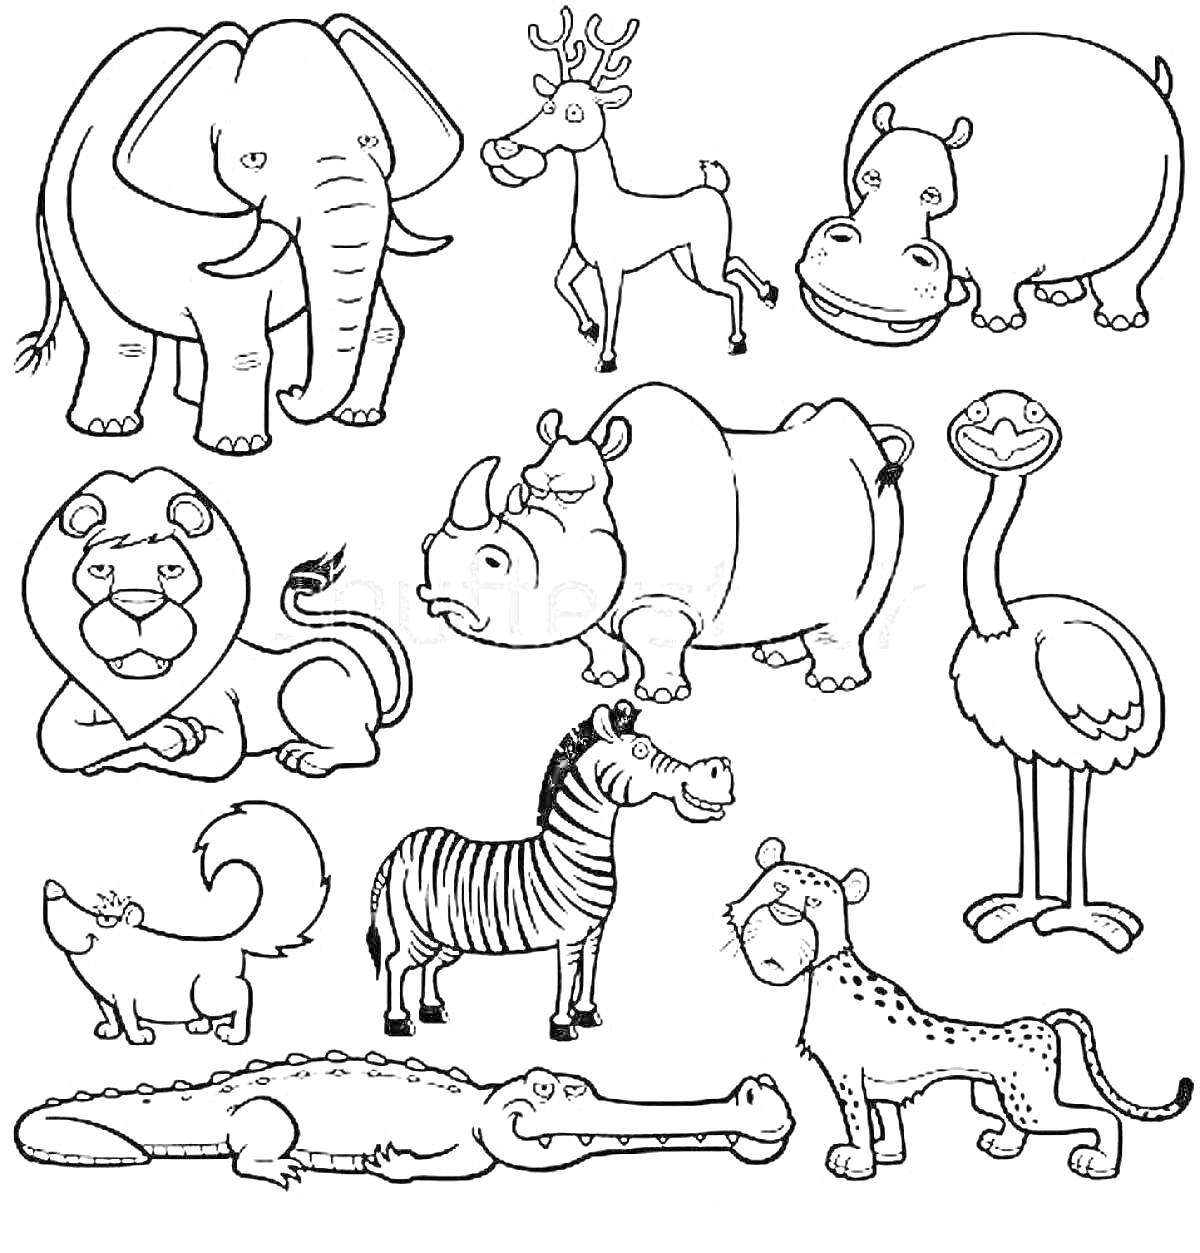 На раскраске изображено: Слон, Олень, Бегемот, Лев, Носорог, Страус, Лиса, Крокодил, Гепард, Творчество, Для детей, Животные, Зебры